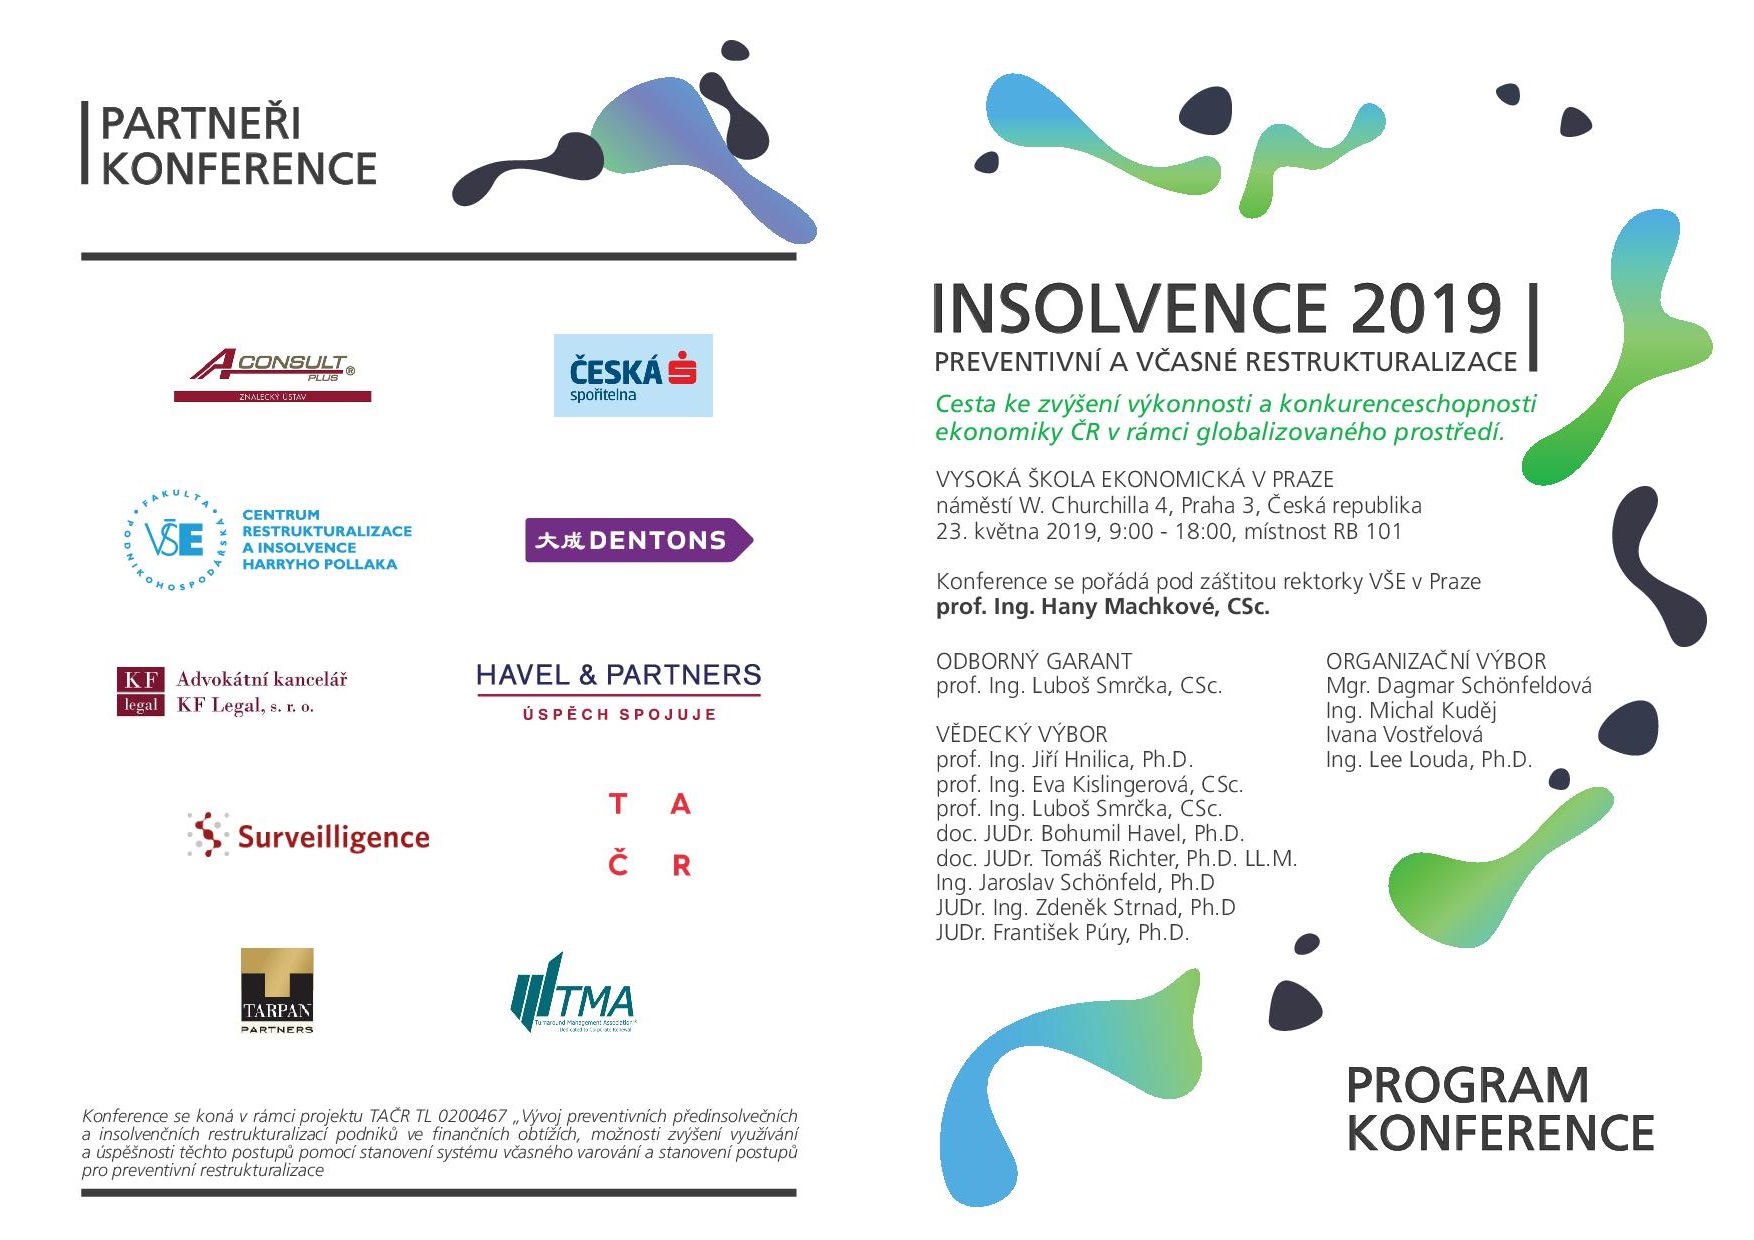 Program Konference Insolvence 2019!